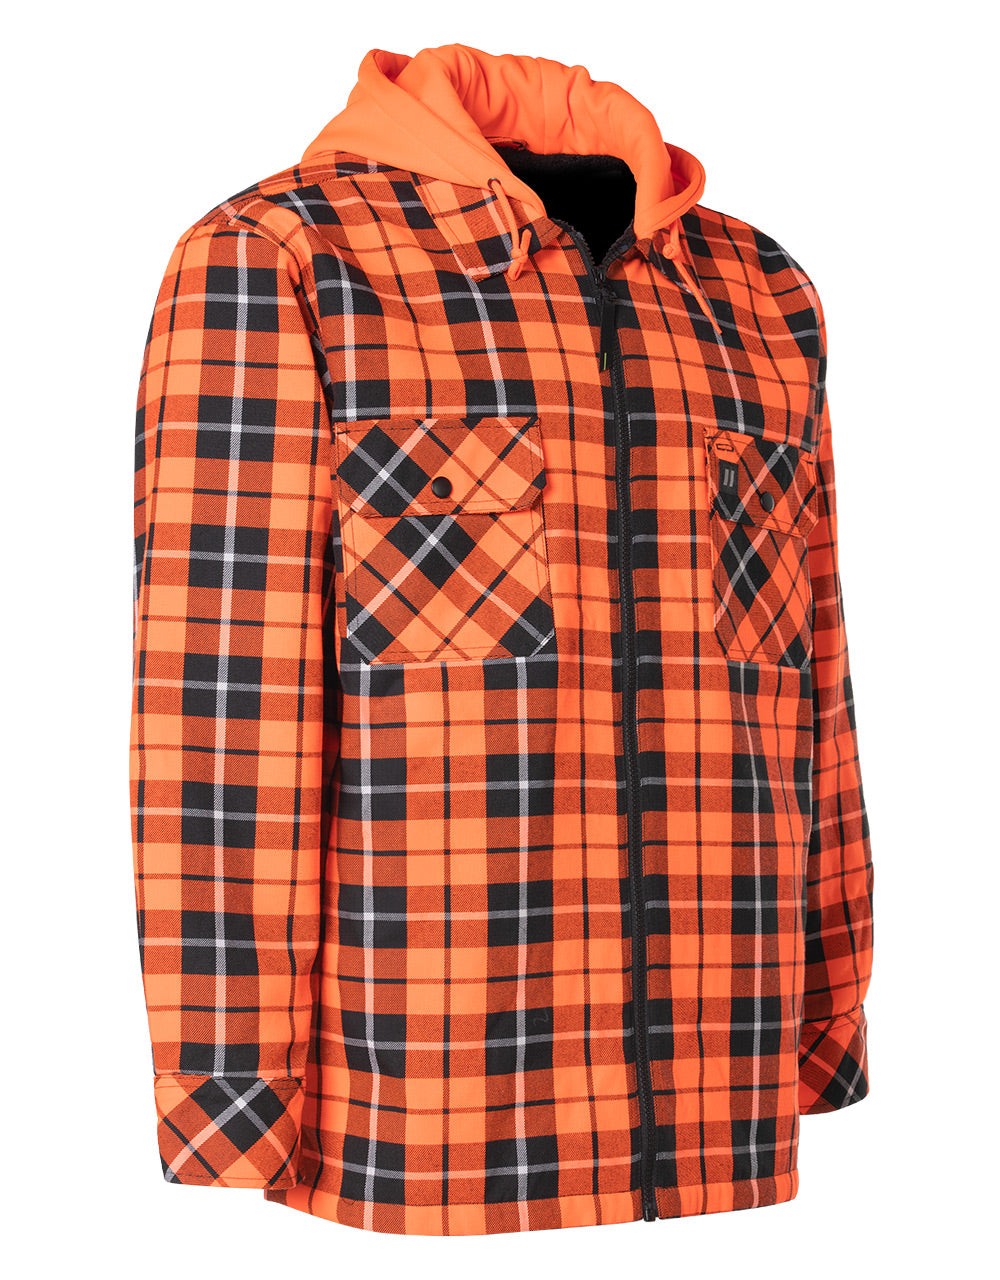 Veste chemise à capuche en flanelle à carreaux tartan orange haute visibilité, doublée de sherpa, avec fermeture éclair sur le devant 